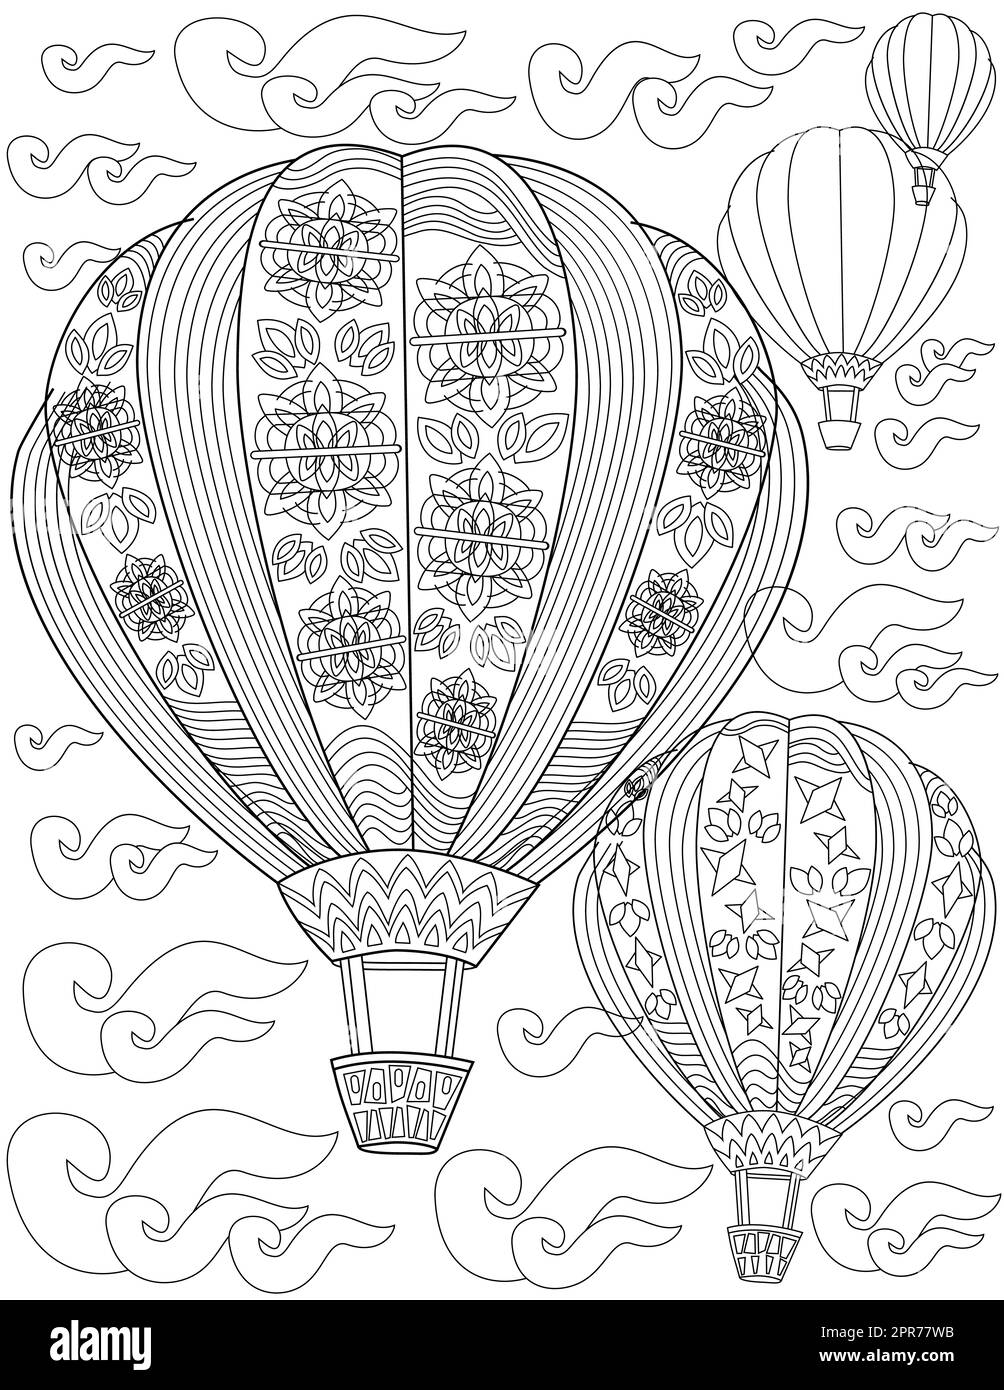 Malbuch-Seite Mit Heißluftballons Mit Blumenmotiven Flying In Sky. Laken Mit Leeren Feuerballons In Den Wolken. Luftschiffe Fliegen Hoch. Stockfoto